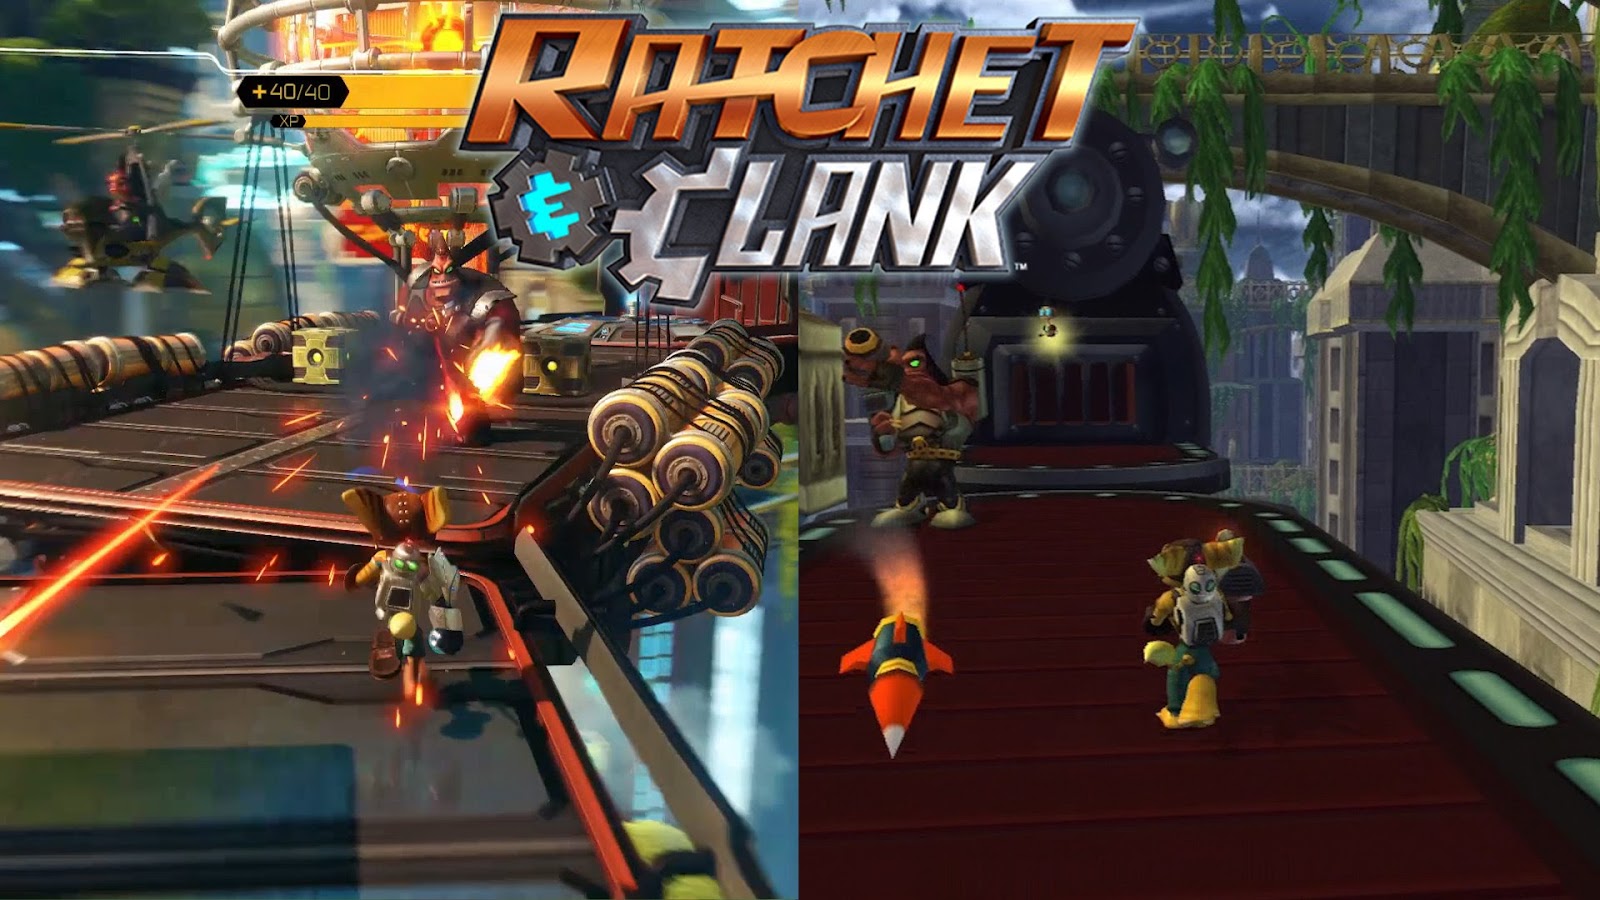 More games игры. Ratchet & Clank (игра). Ratchet and Clank 2016. Ratchet & Clank (игра, 2016). Рэтчет энд Кланк геймплей.